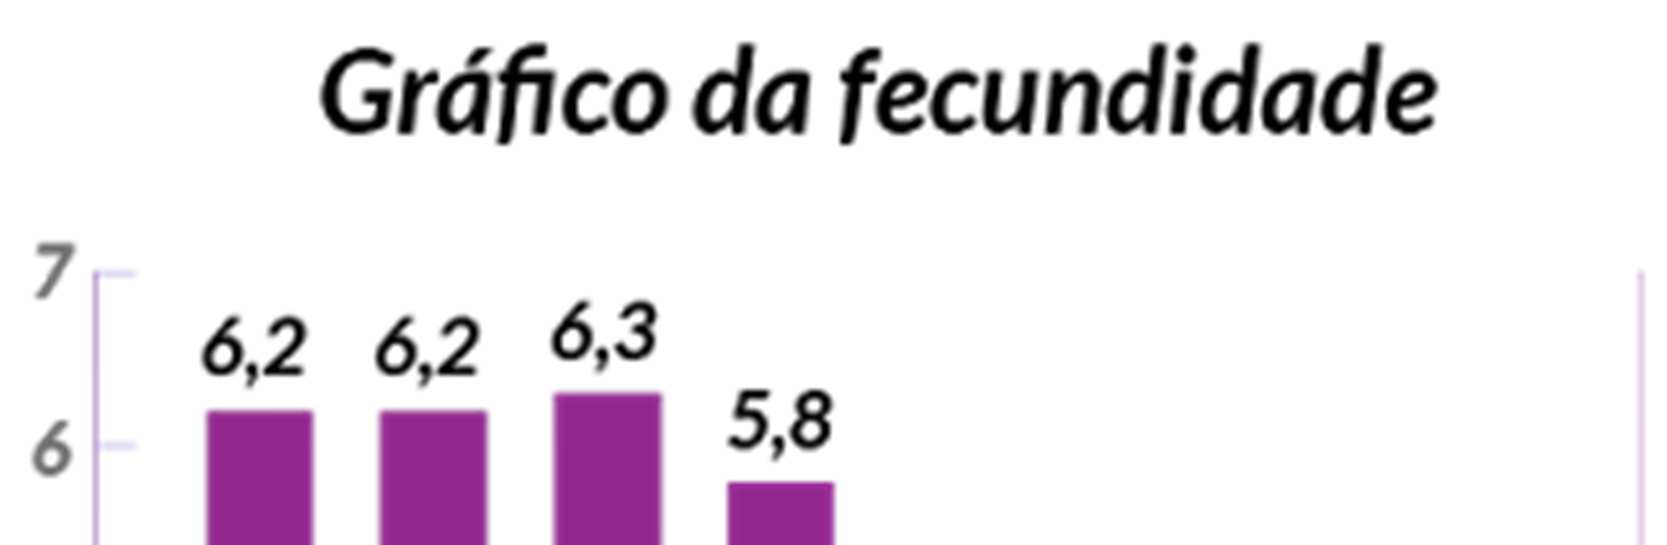 A sociedade brasileira vem passando por grande mudança na taxa de fecundidade (número médiode filhos que uma mulher teria ao final do seu